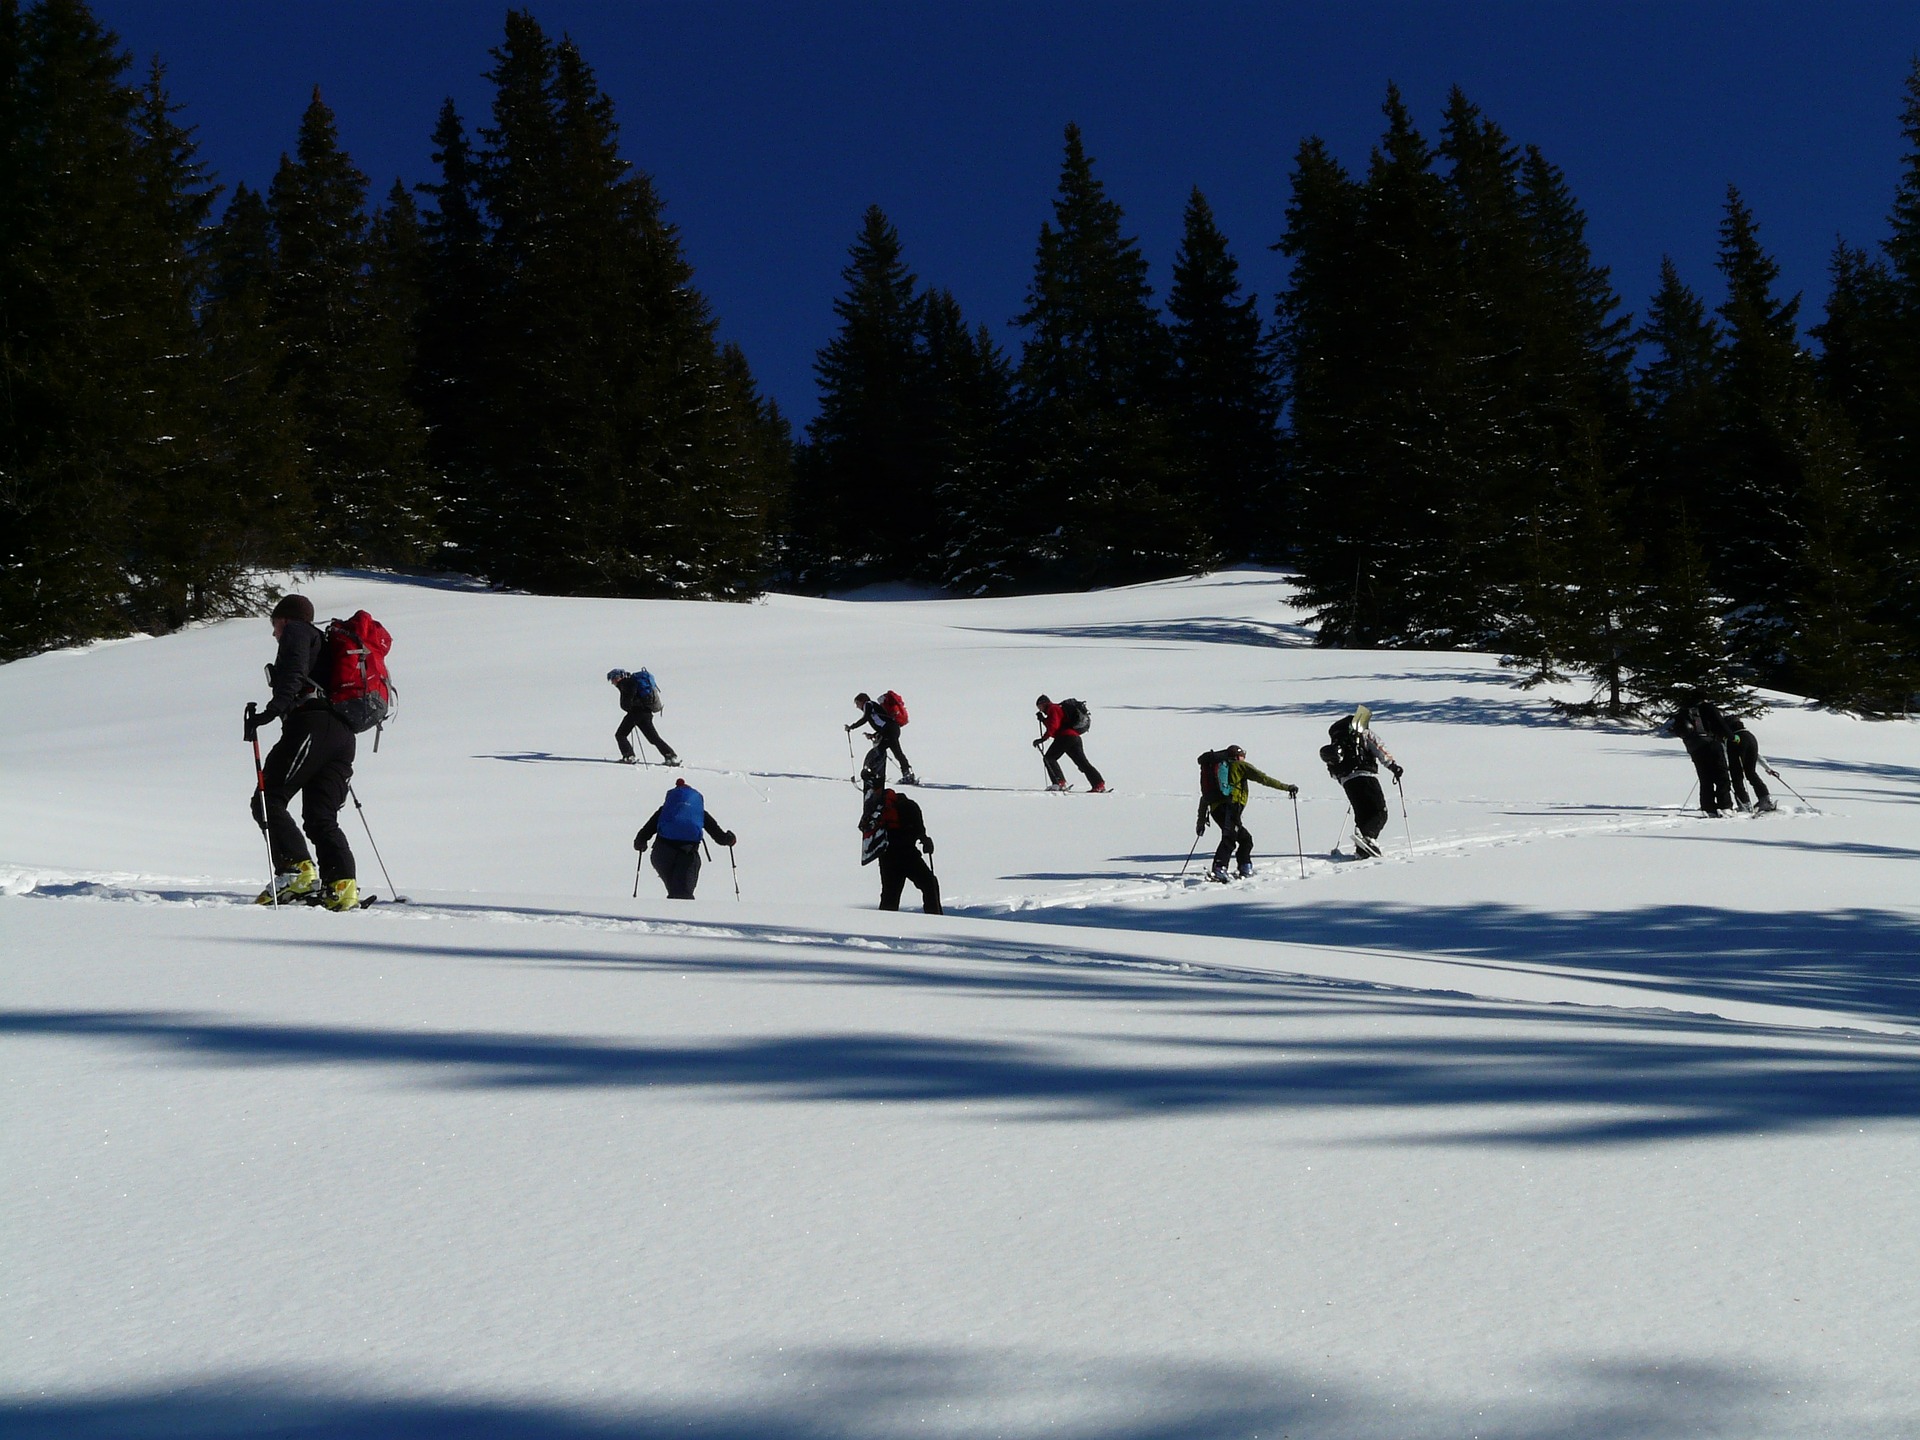 Profitez du ski de randonnée à plusieurs - @Hans - Pixabay